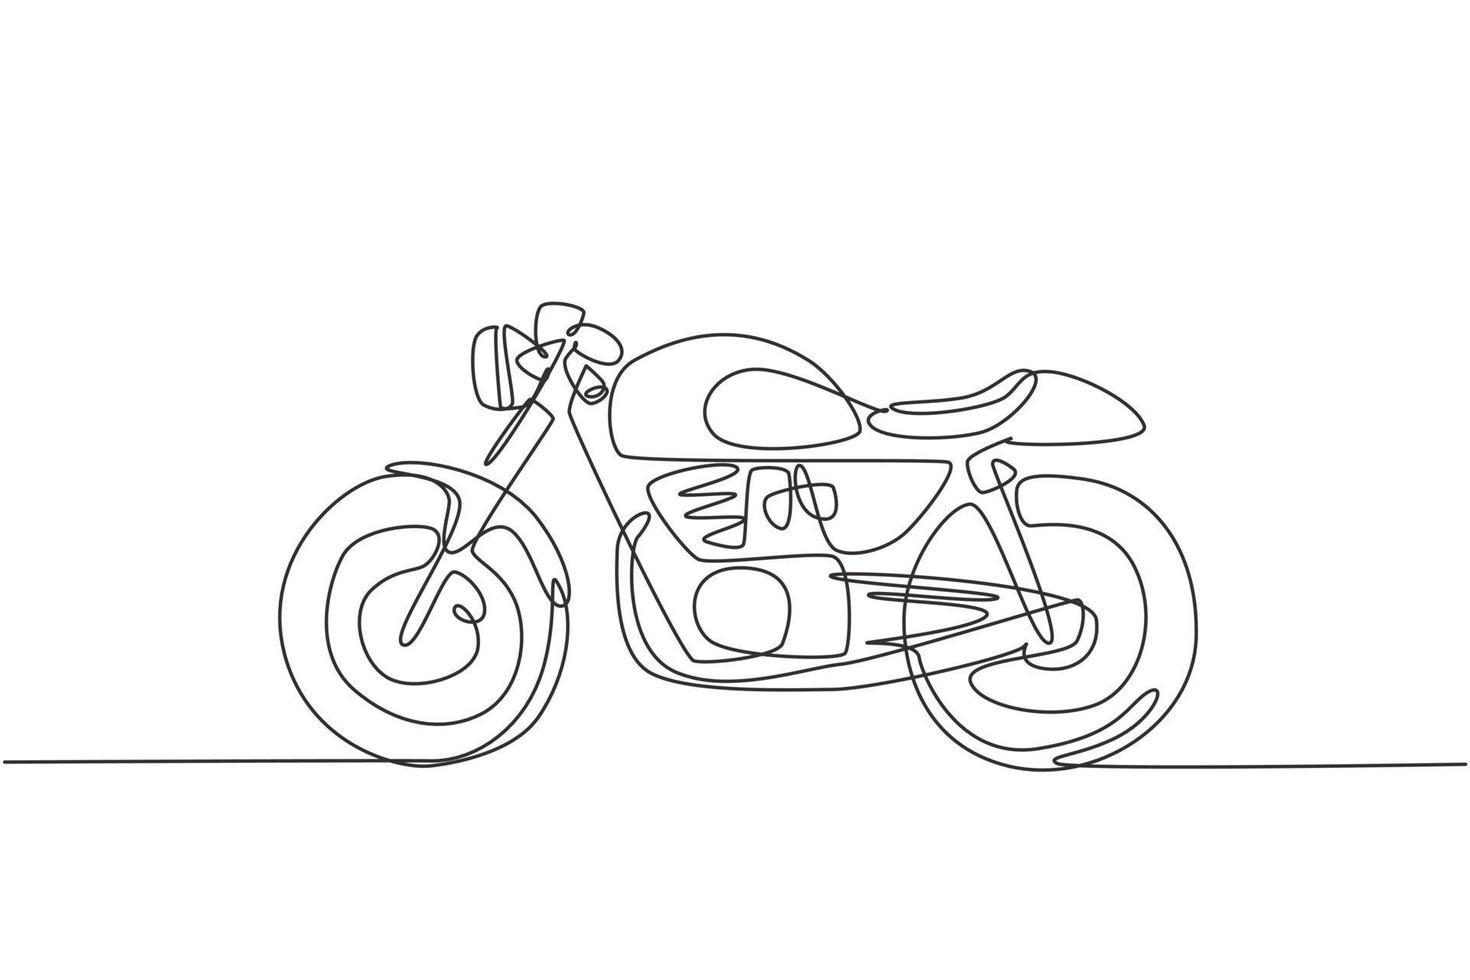 Eine durchgehende Strichzeichnung des Retro-Oldtimer-Motorradsymbols. klassisches Motorrad-Transportkonzept einzeilige Grafikdesign-Vektorillustration zeichnen vektor